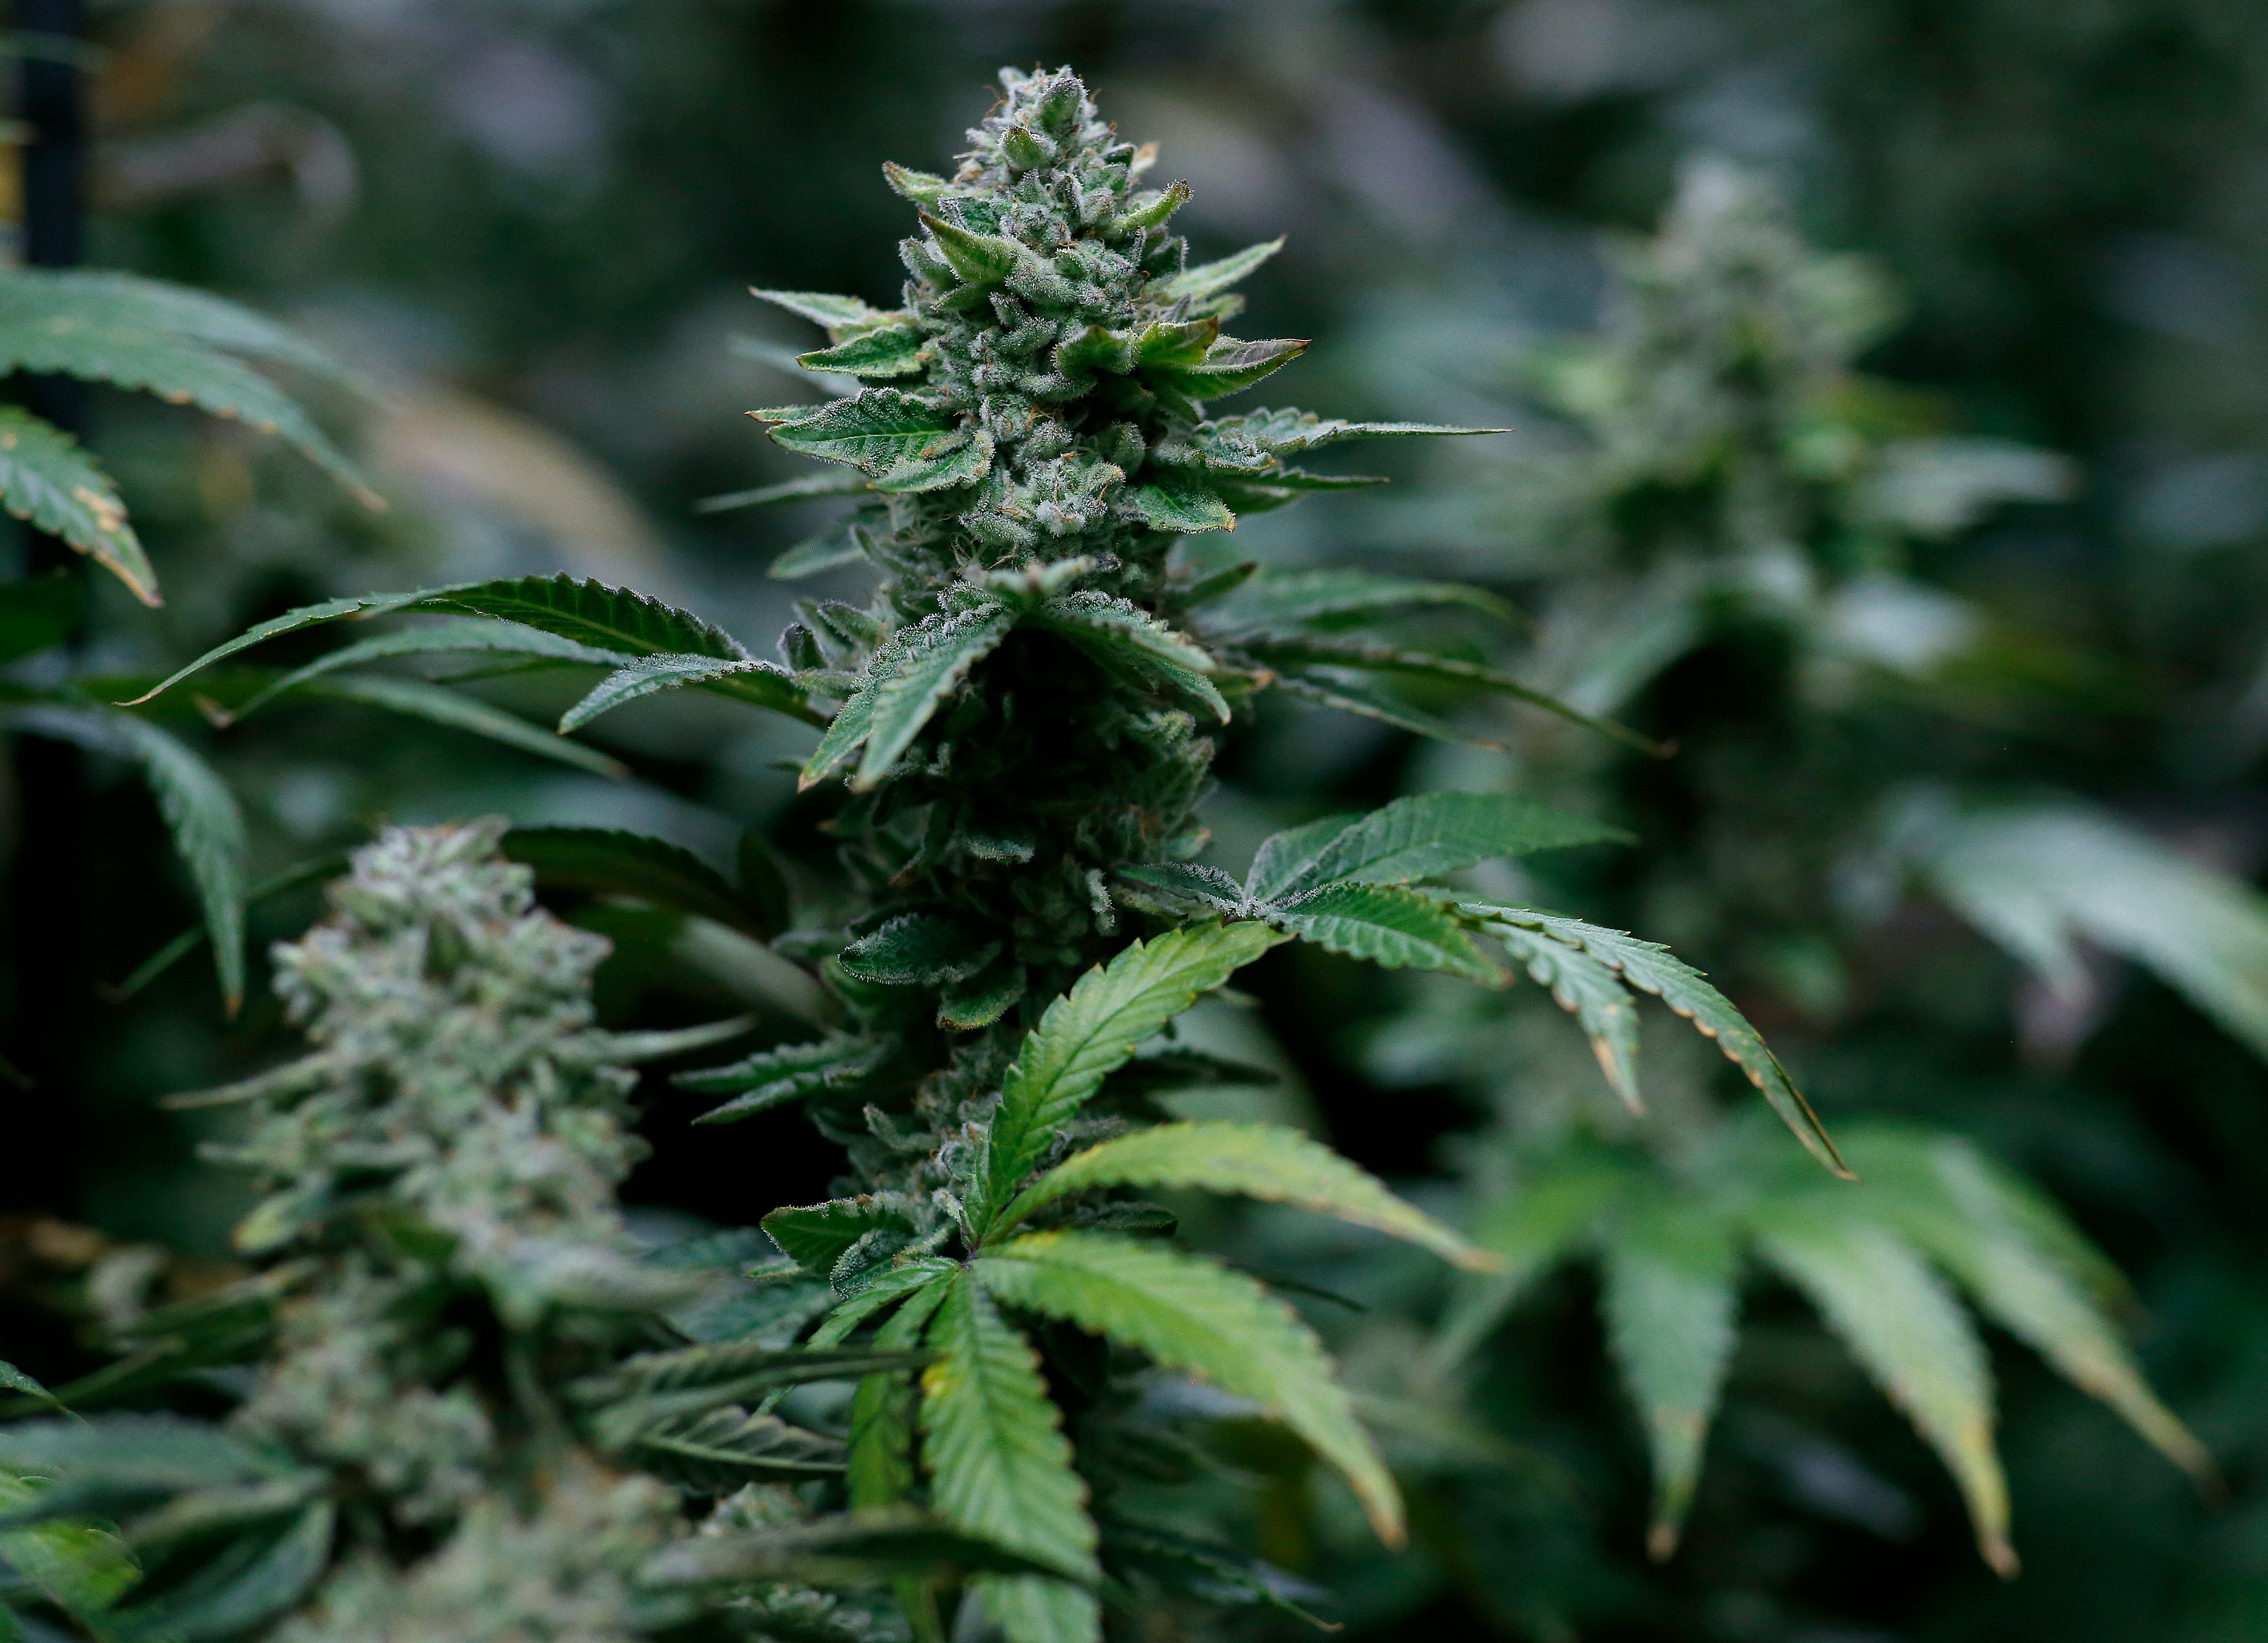 How do you grow cannabis indoors